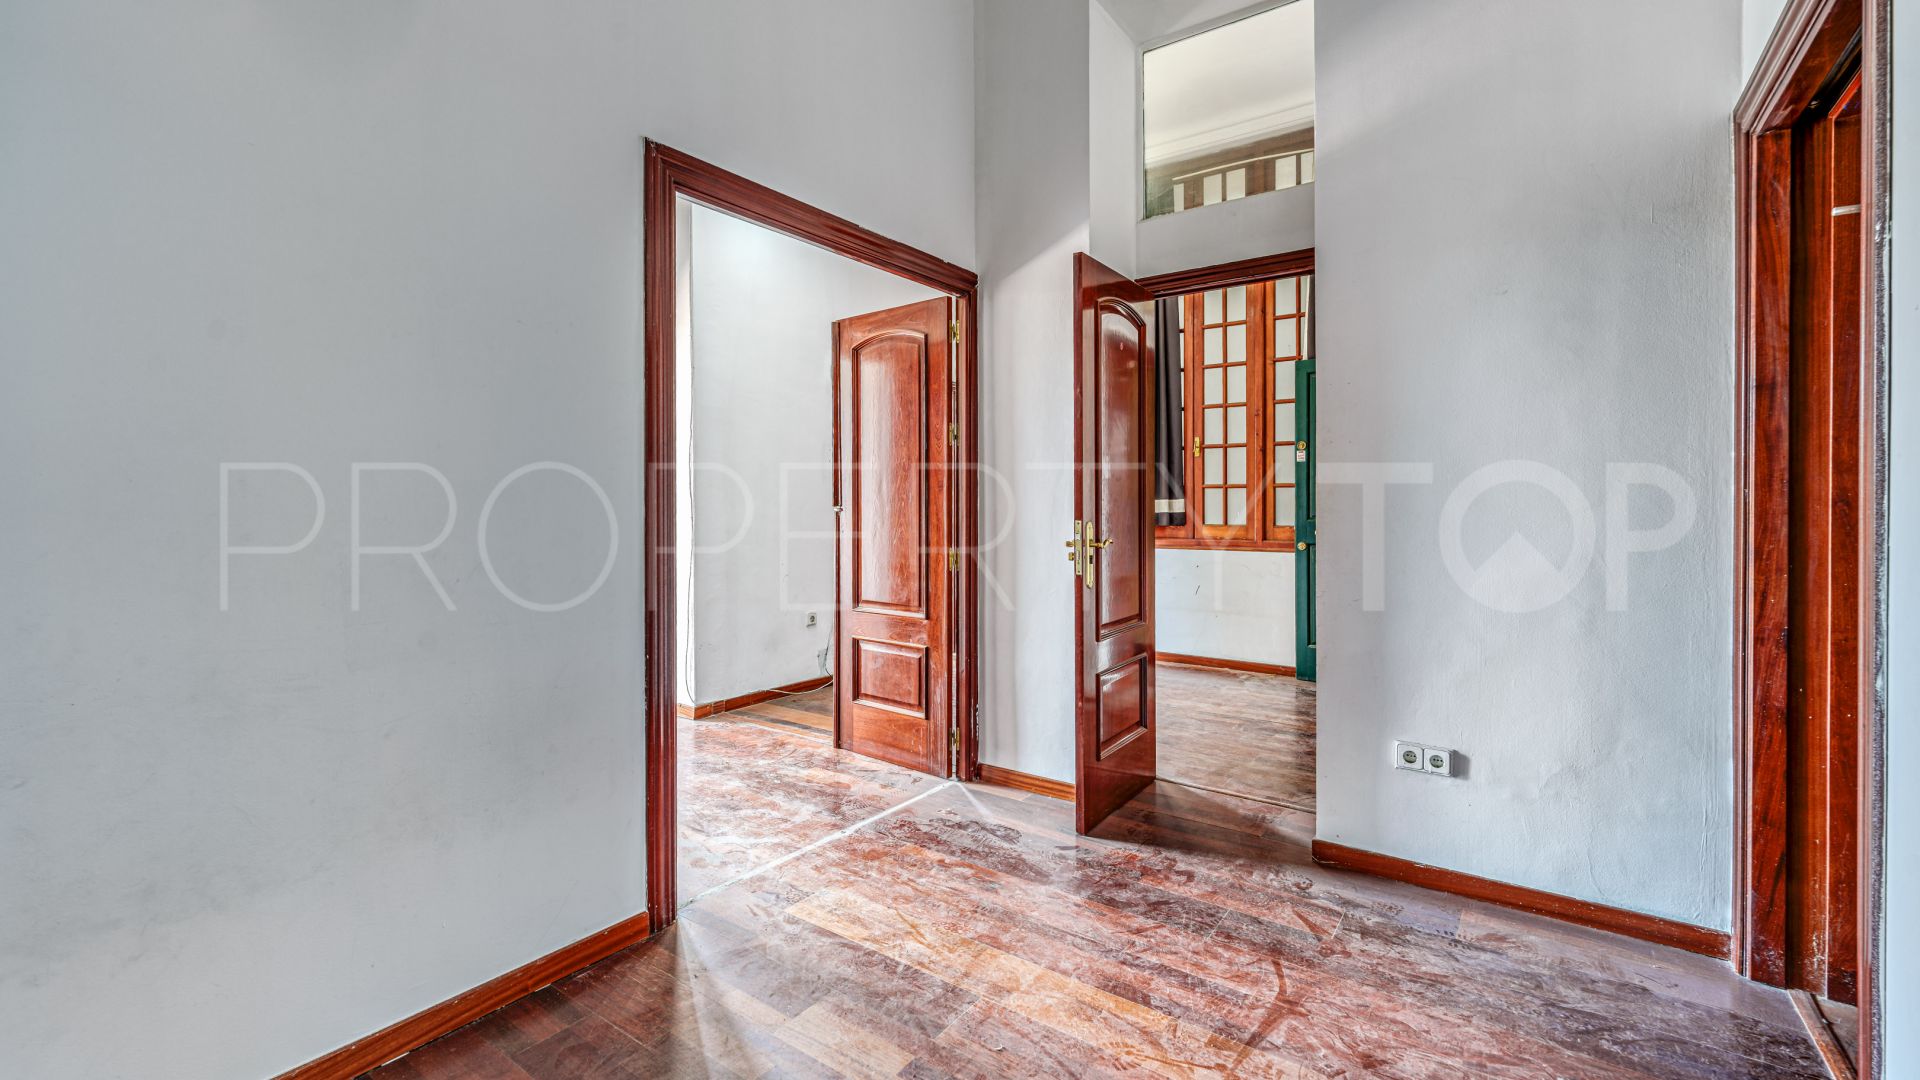 Malaga, apartamento en venta con 6 dormitorios